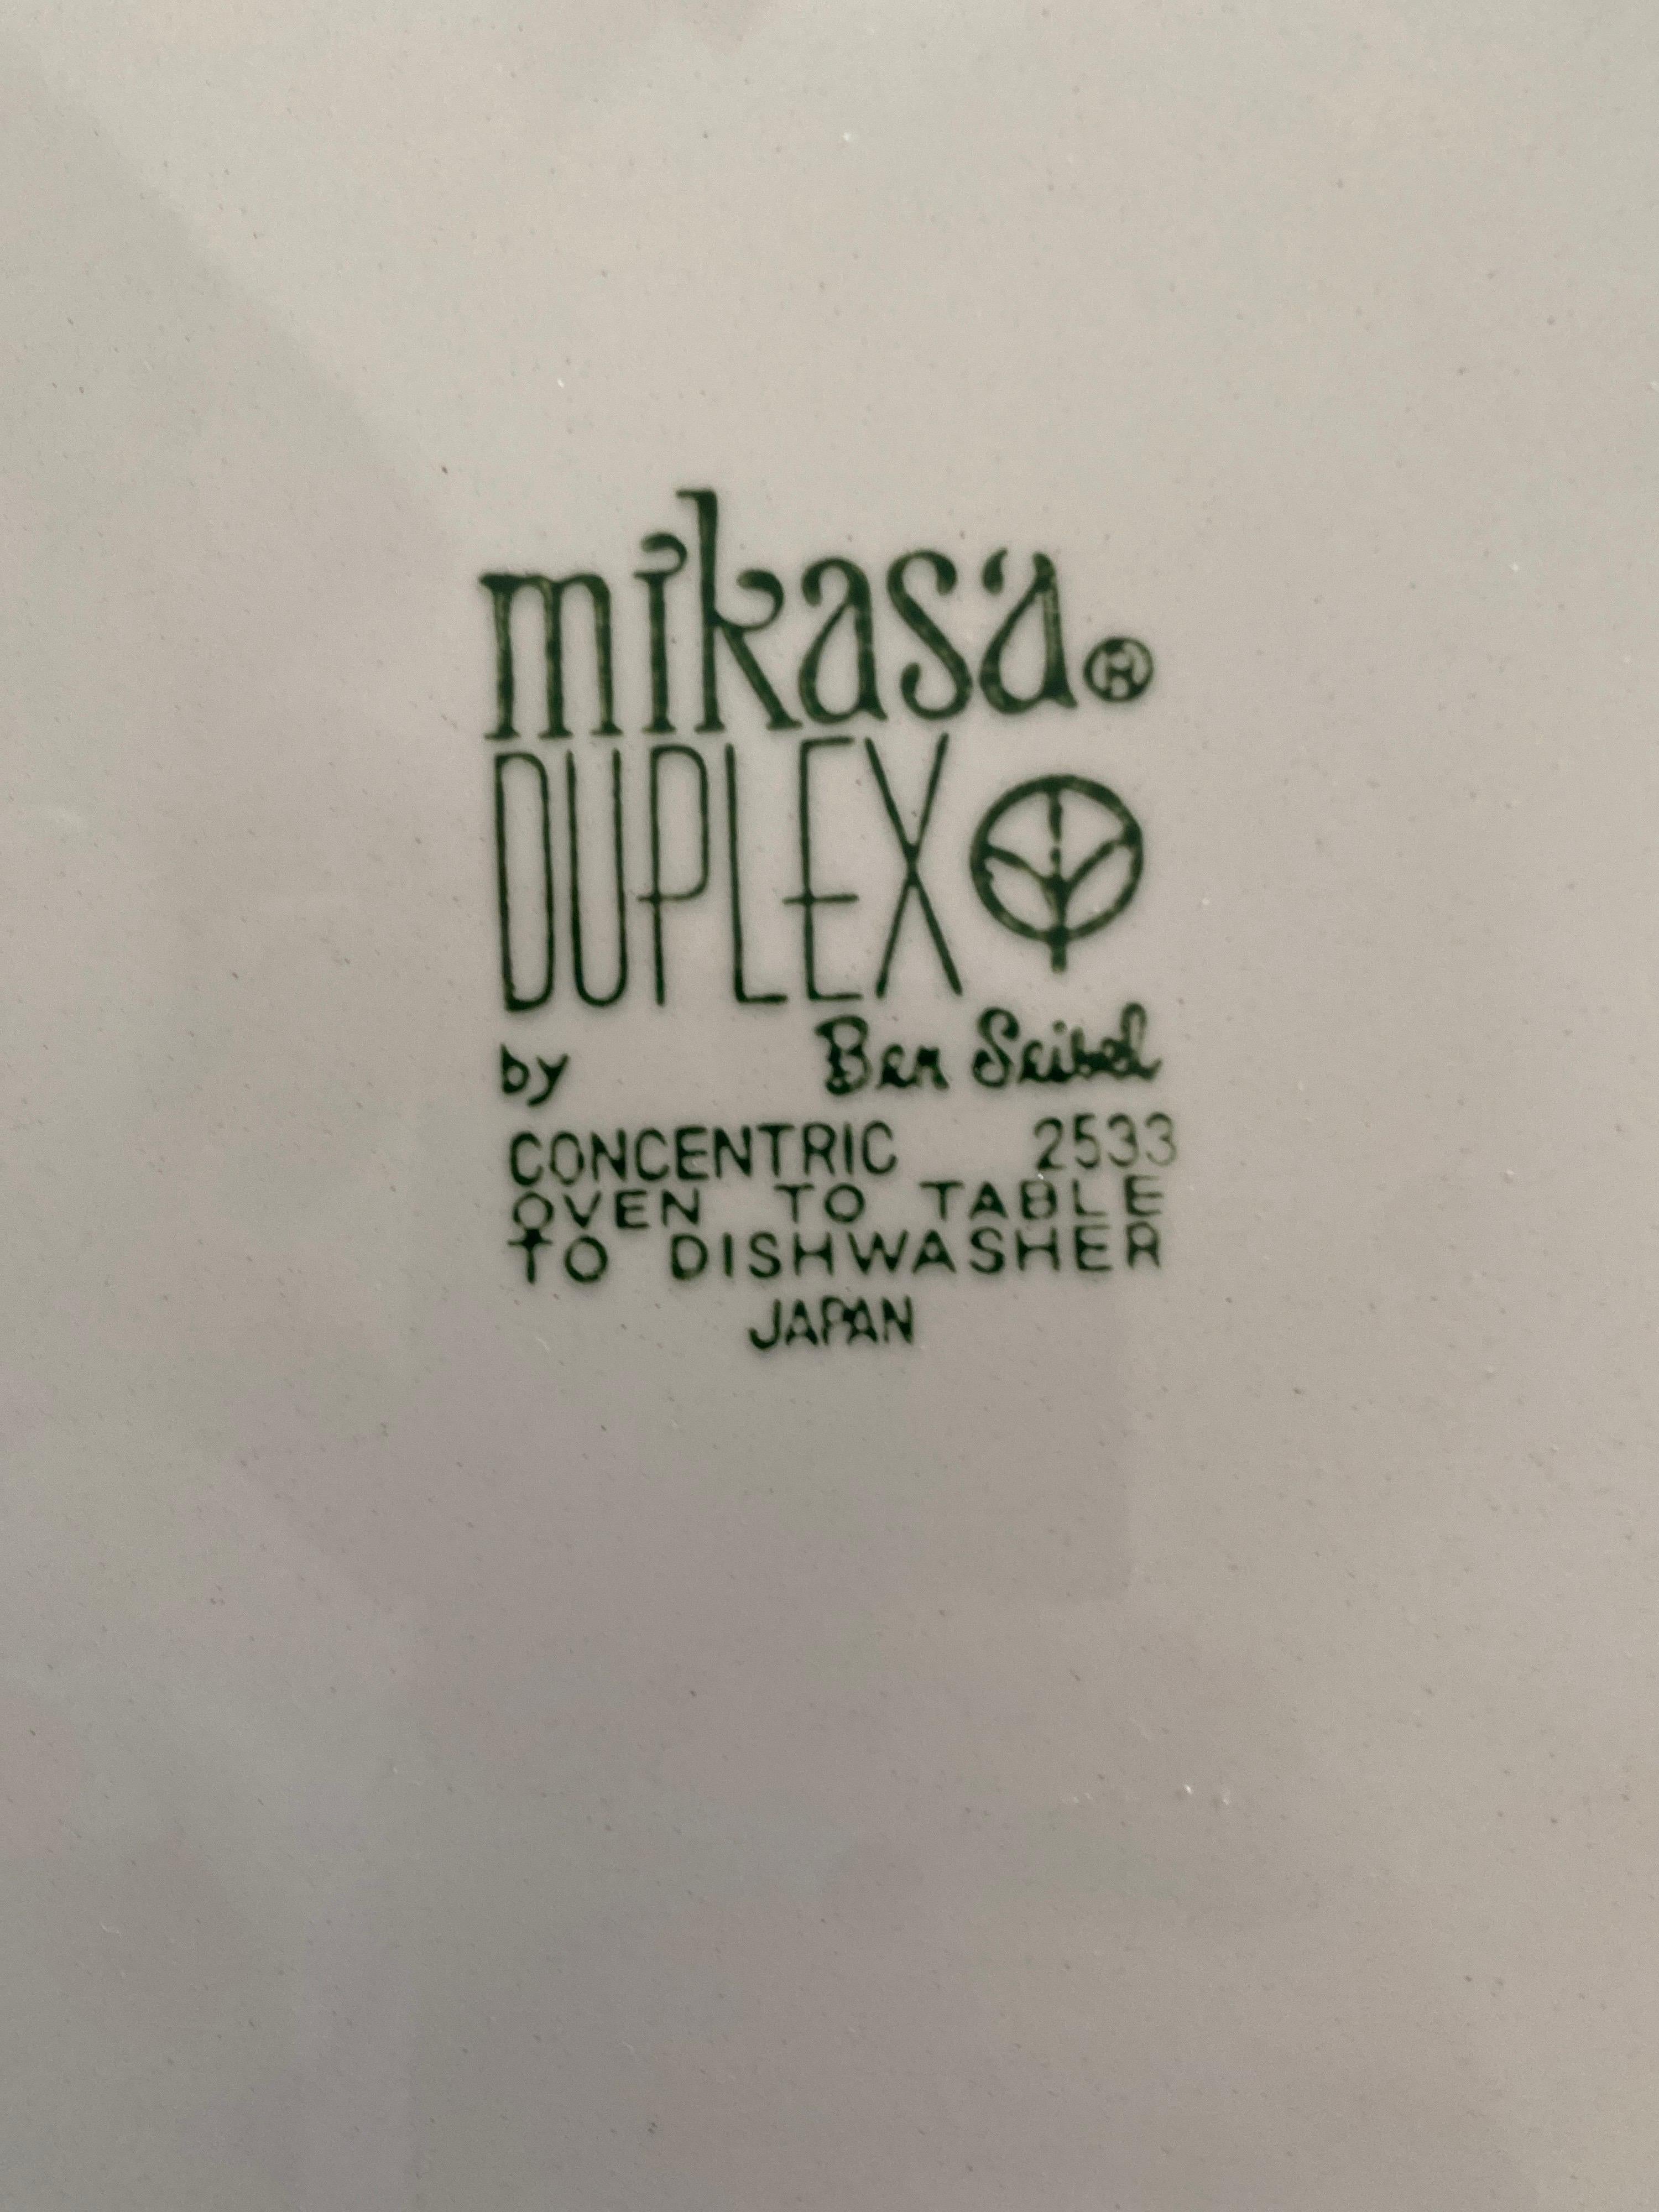 mikasa duplex by ben seibel